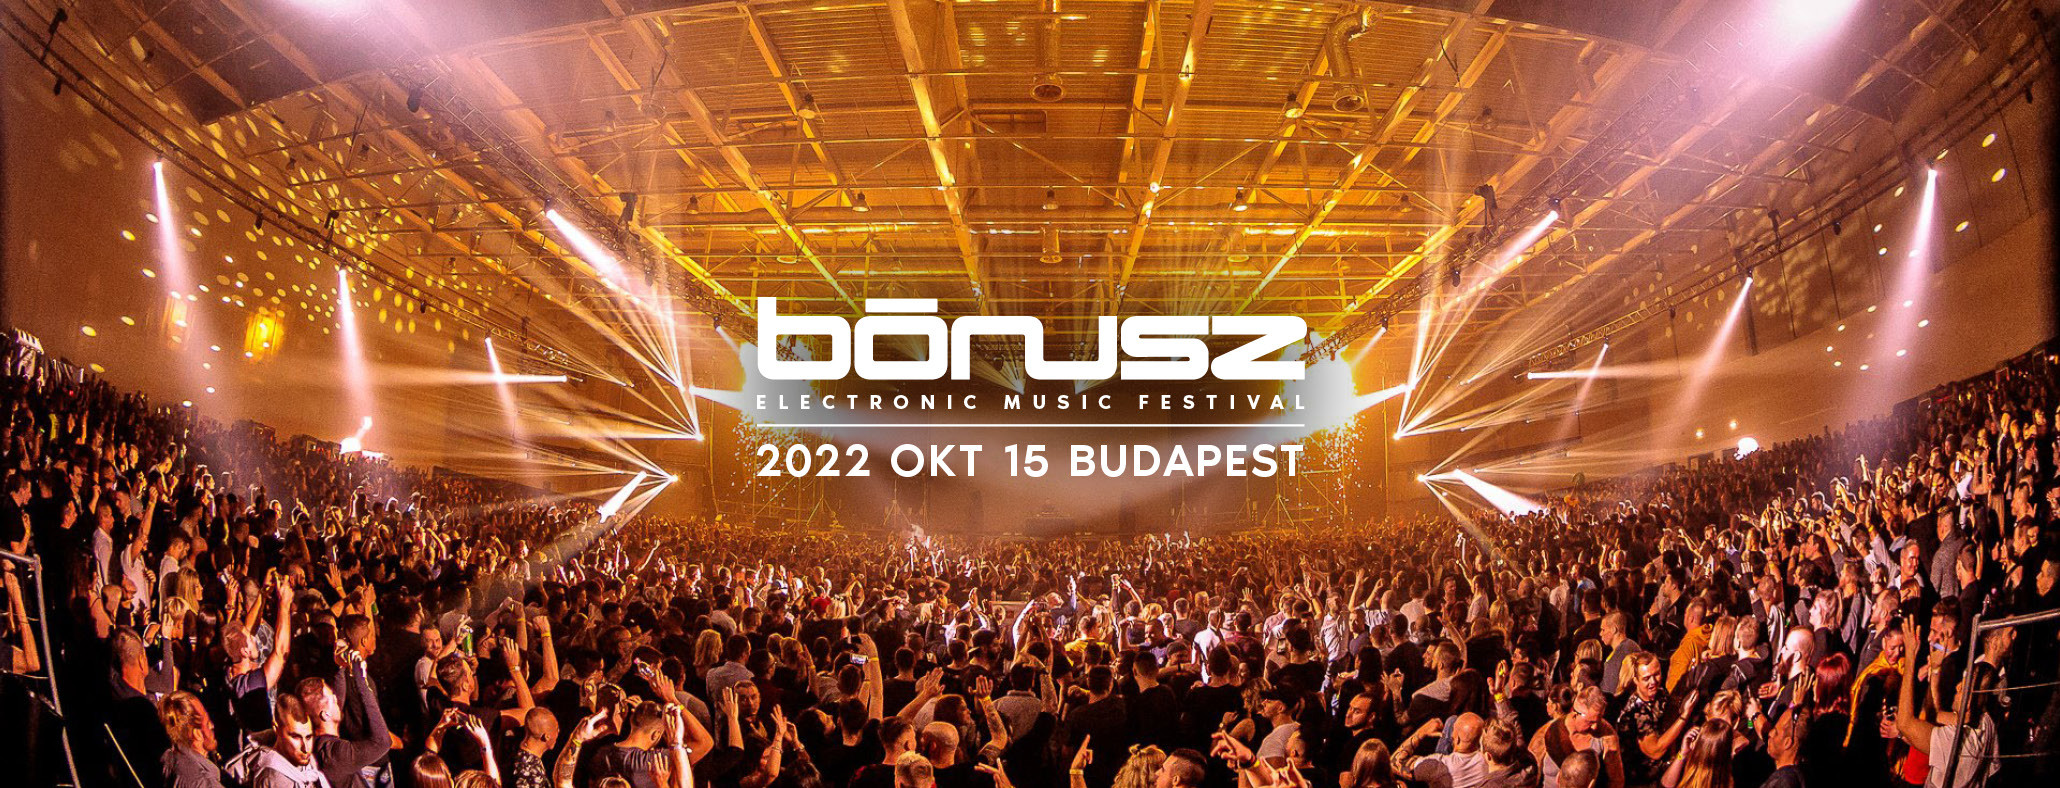 BÓNUSZ ELECTRONIC MUSIC FESTIVAL 2022